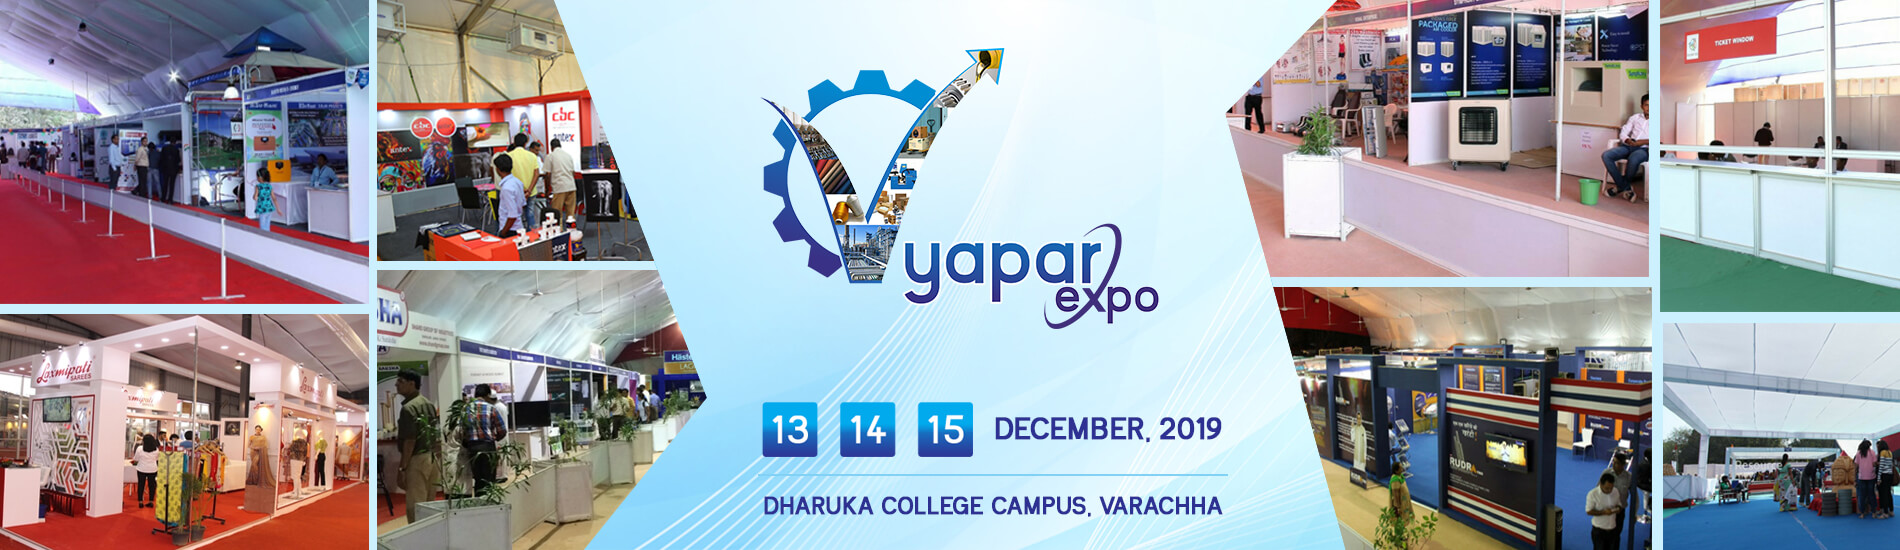 Vyapar Expo Surat 2019, Surat, Gujarat, India